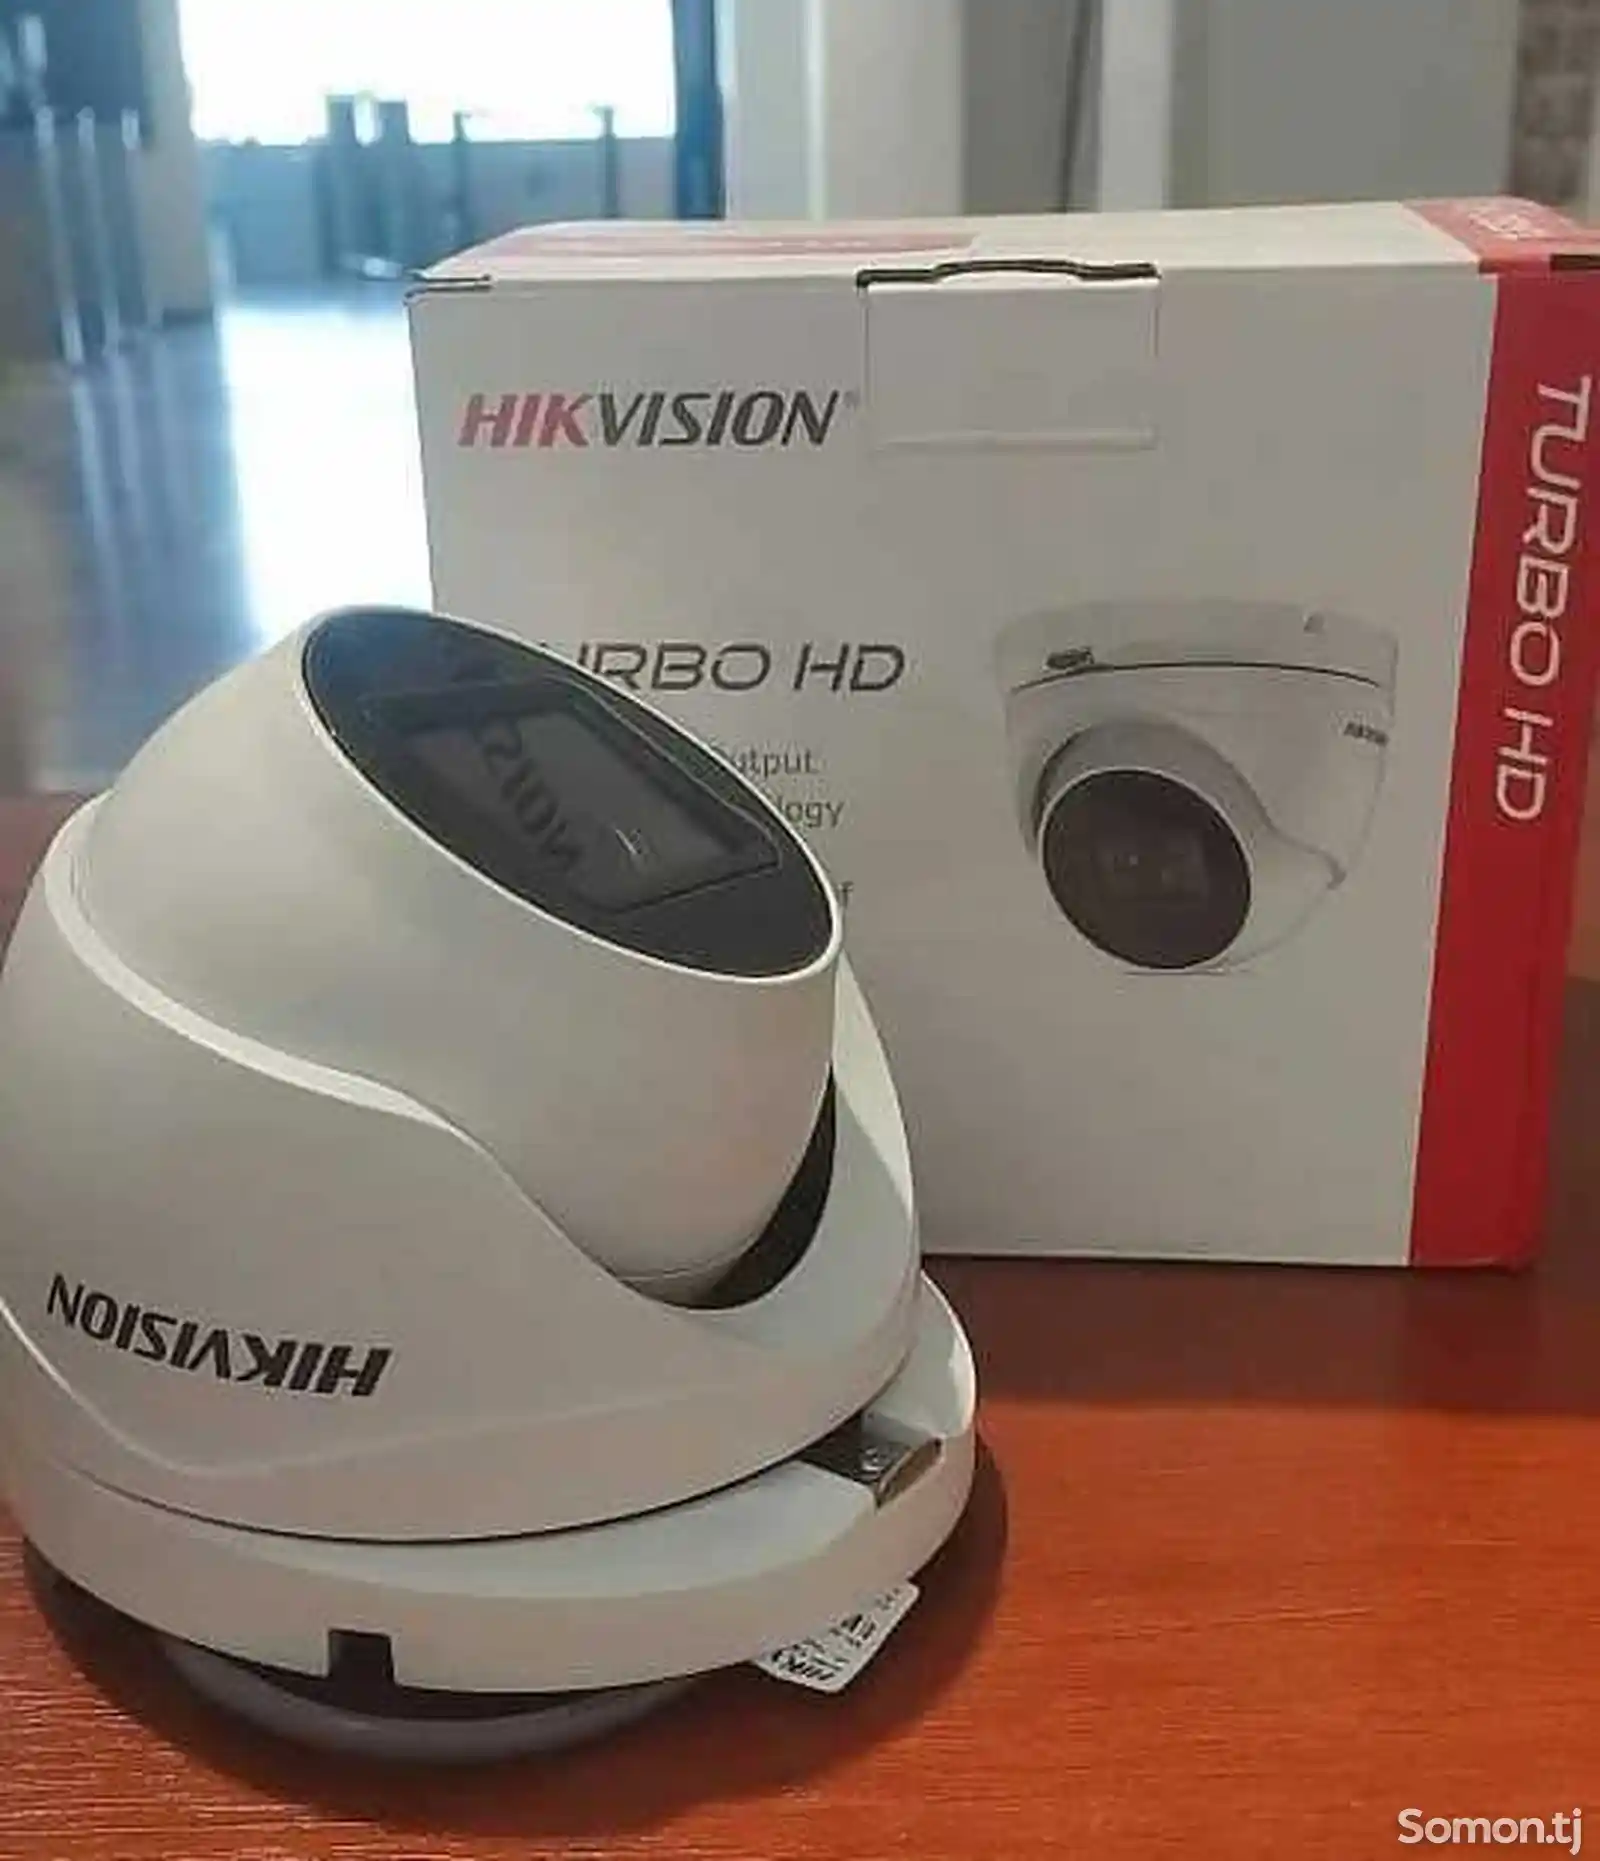 Аналоговая камера Hikvision-3